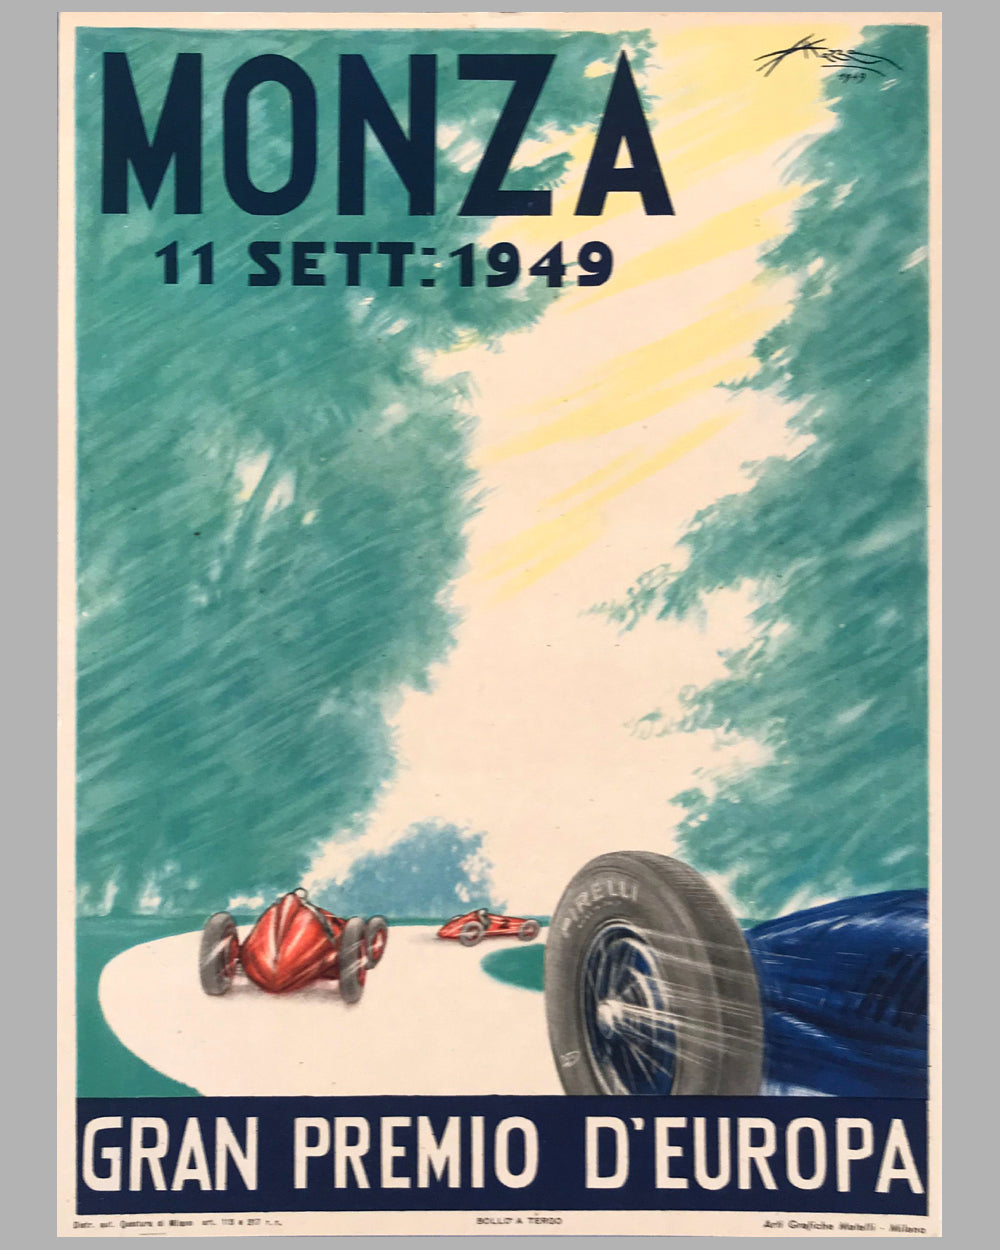 Gran Premio d'Europa, Monza 1949, original poster by Aldo Mazza